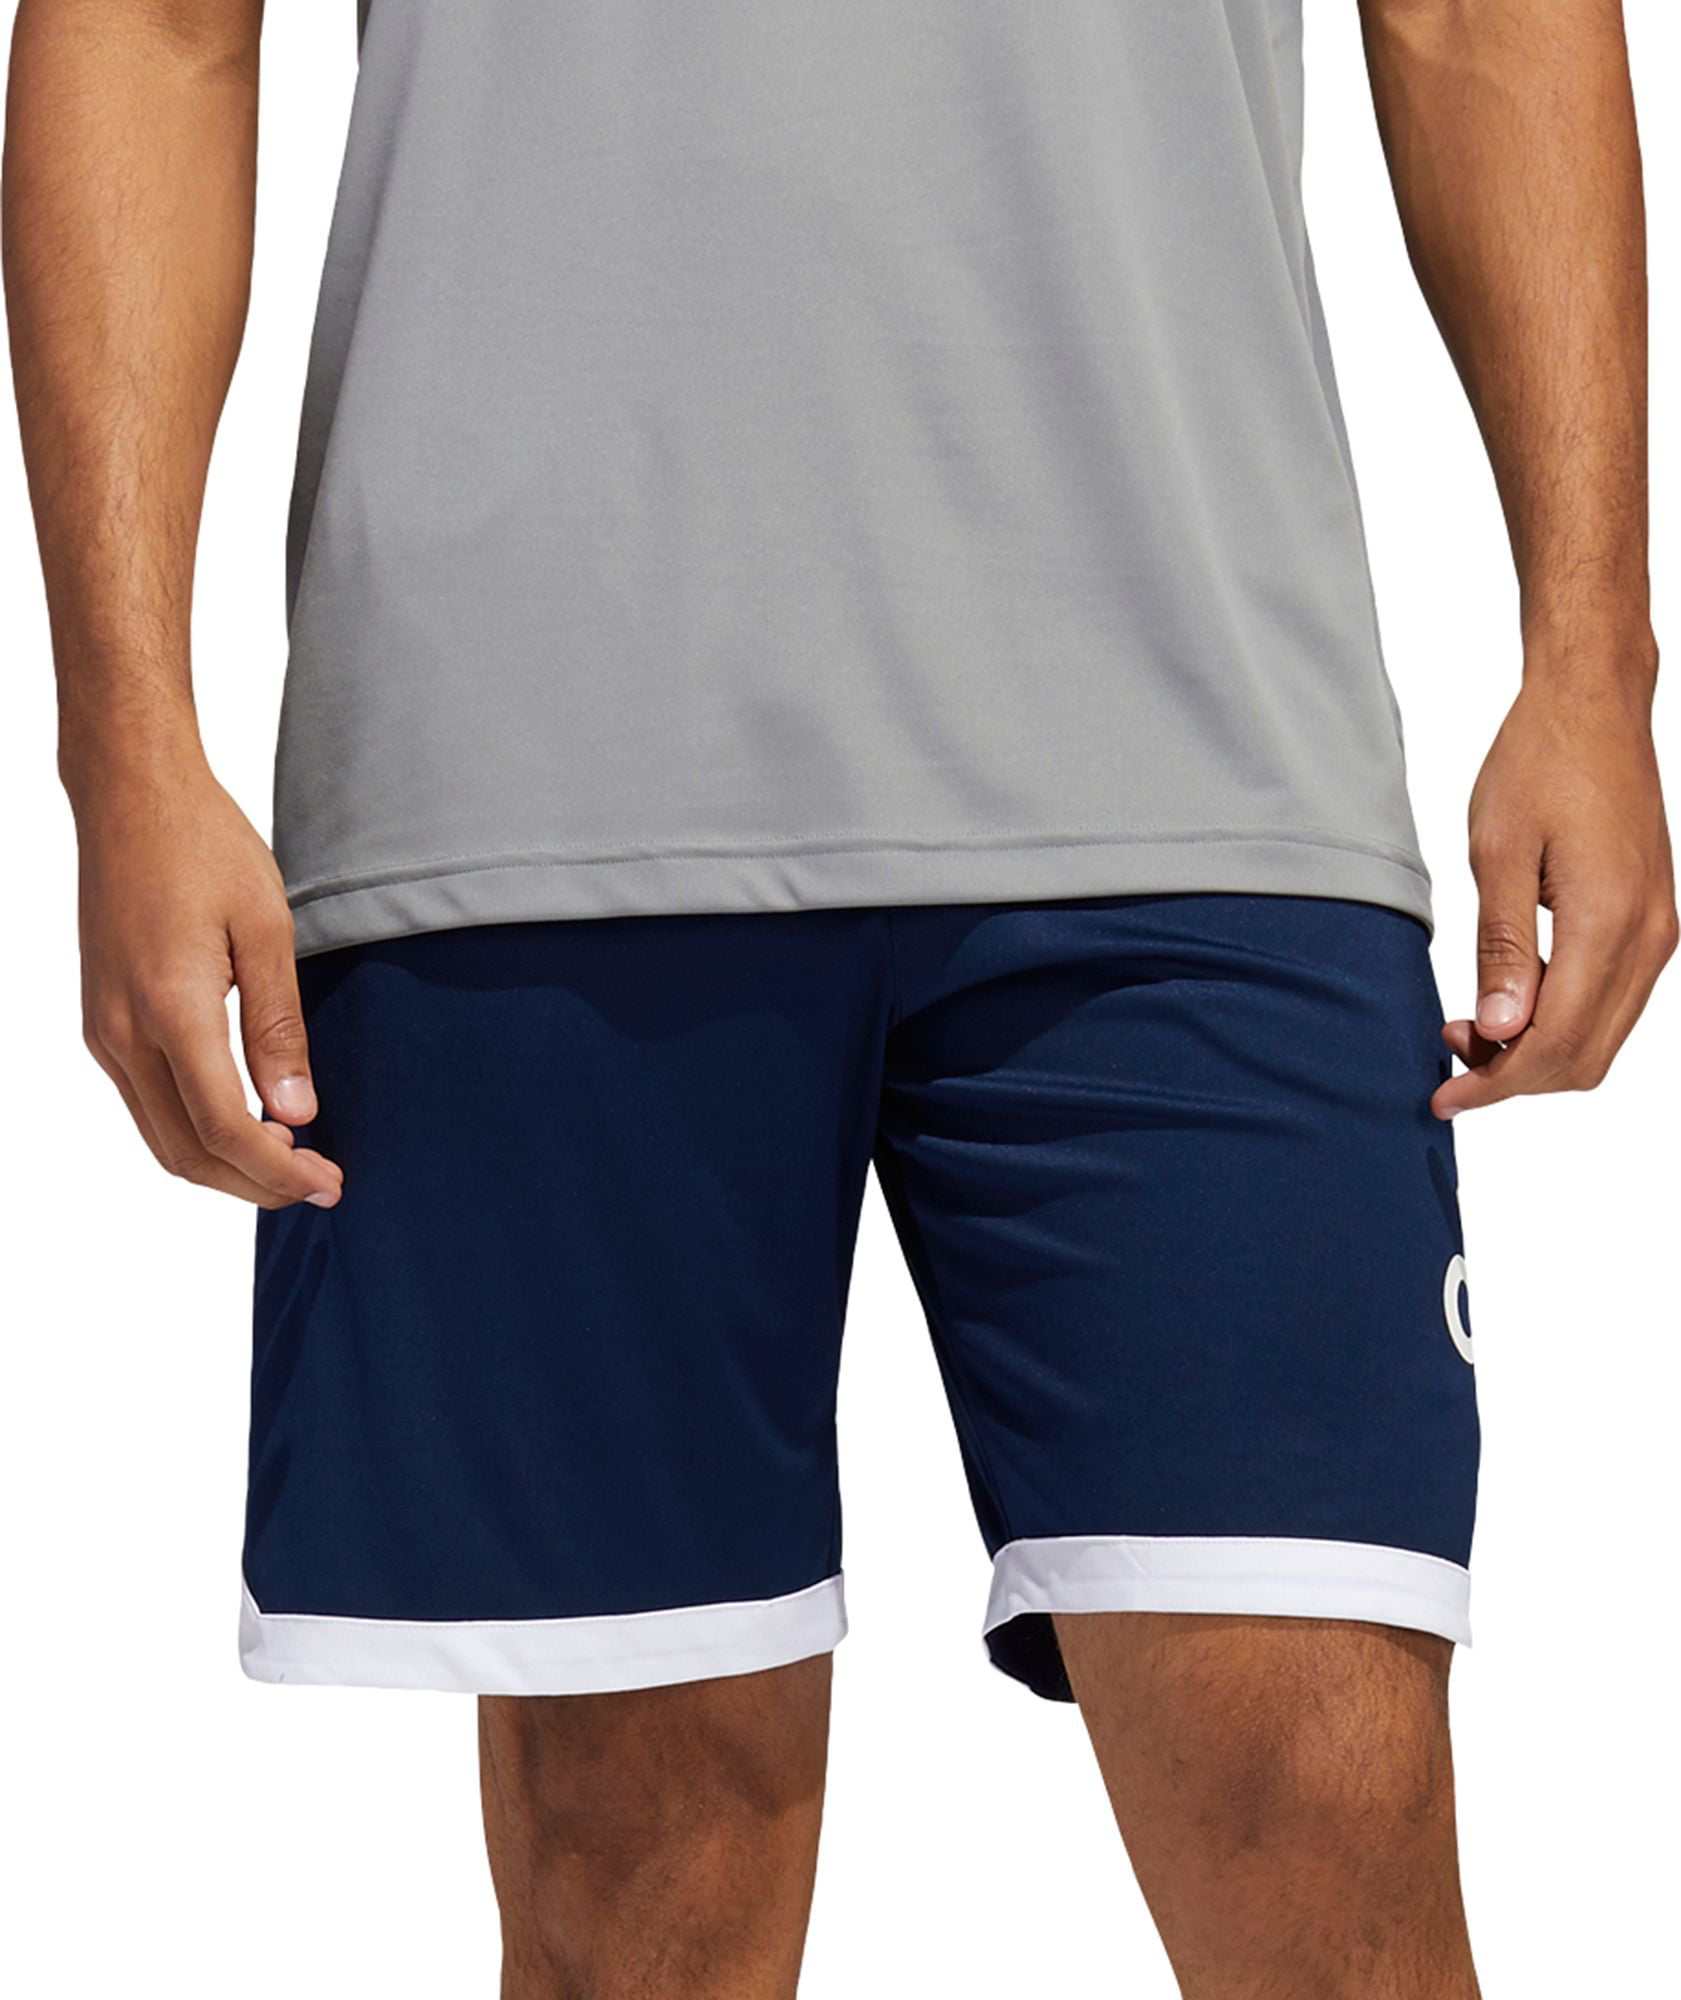 adidas short basketball shorts